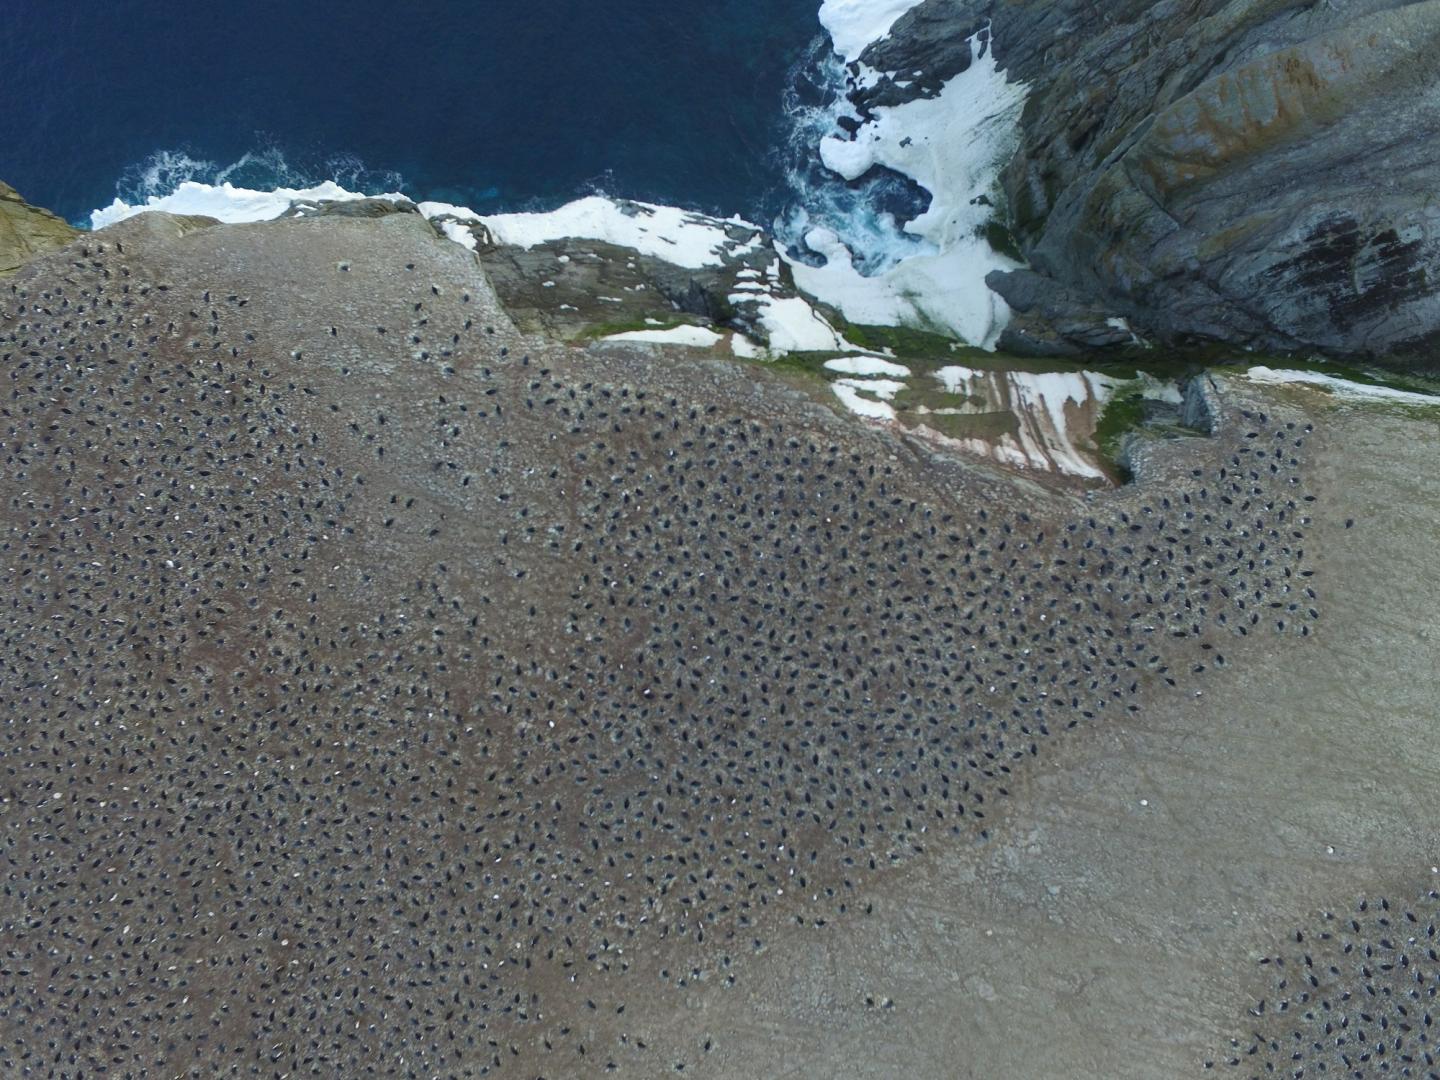 Τεράστια αποικία 1,5 εκατομμυρίων πιγκουίνων ανακαλύφθηκε στην Ανταρκτική